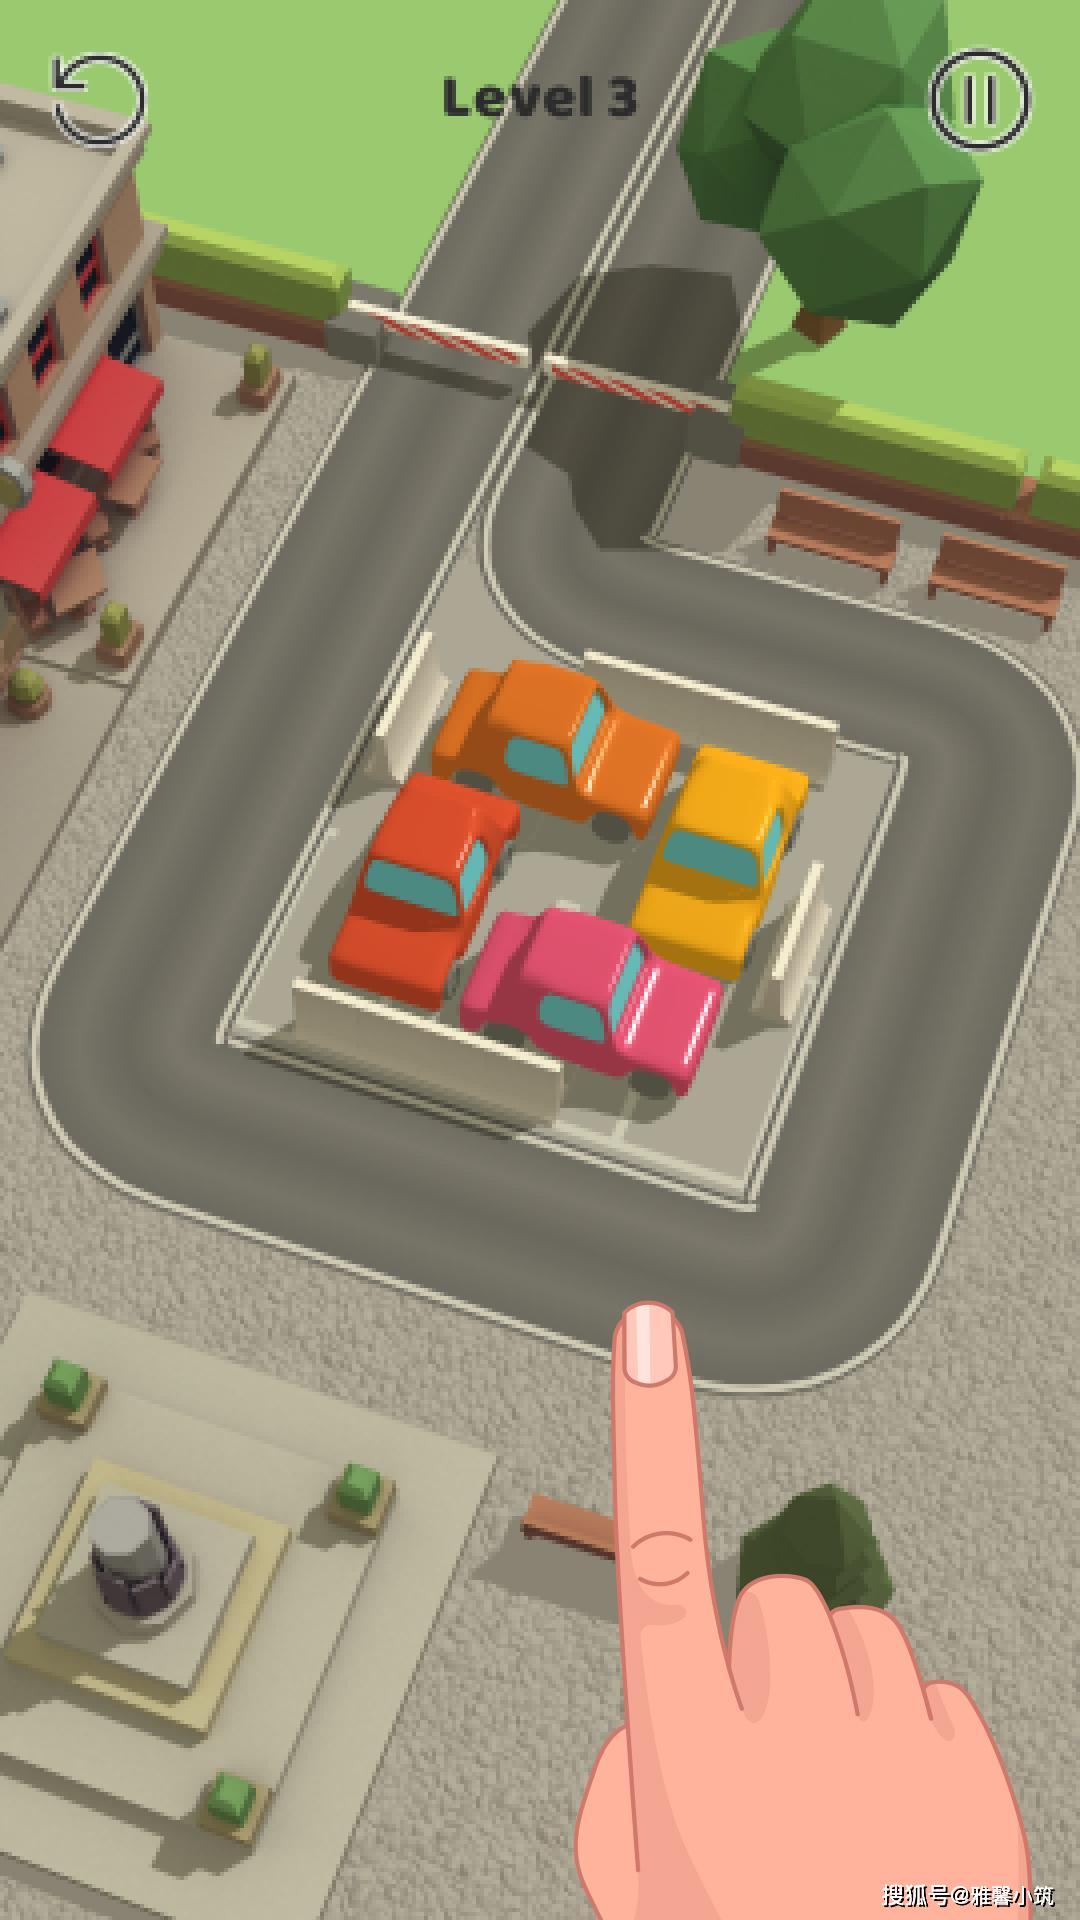 《ParkingJam3D》打造停车主题简化版“华容道”益智手游